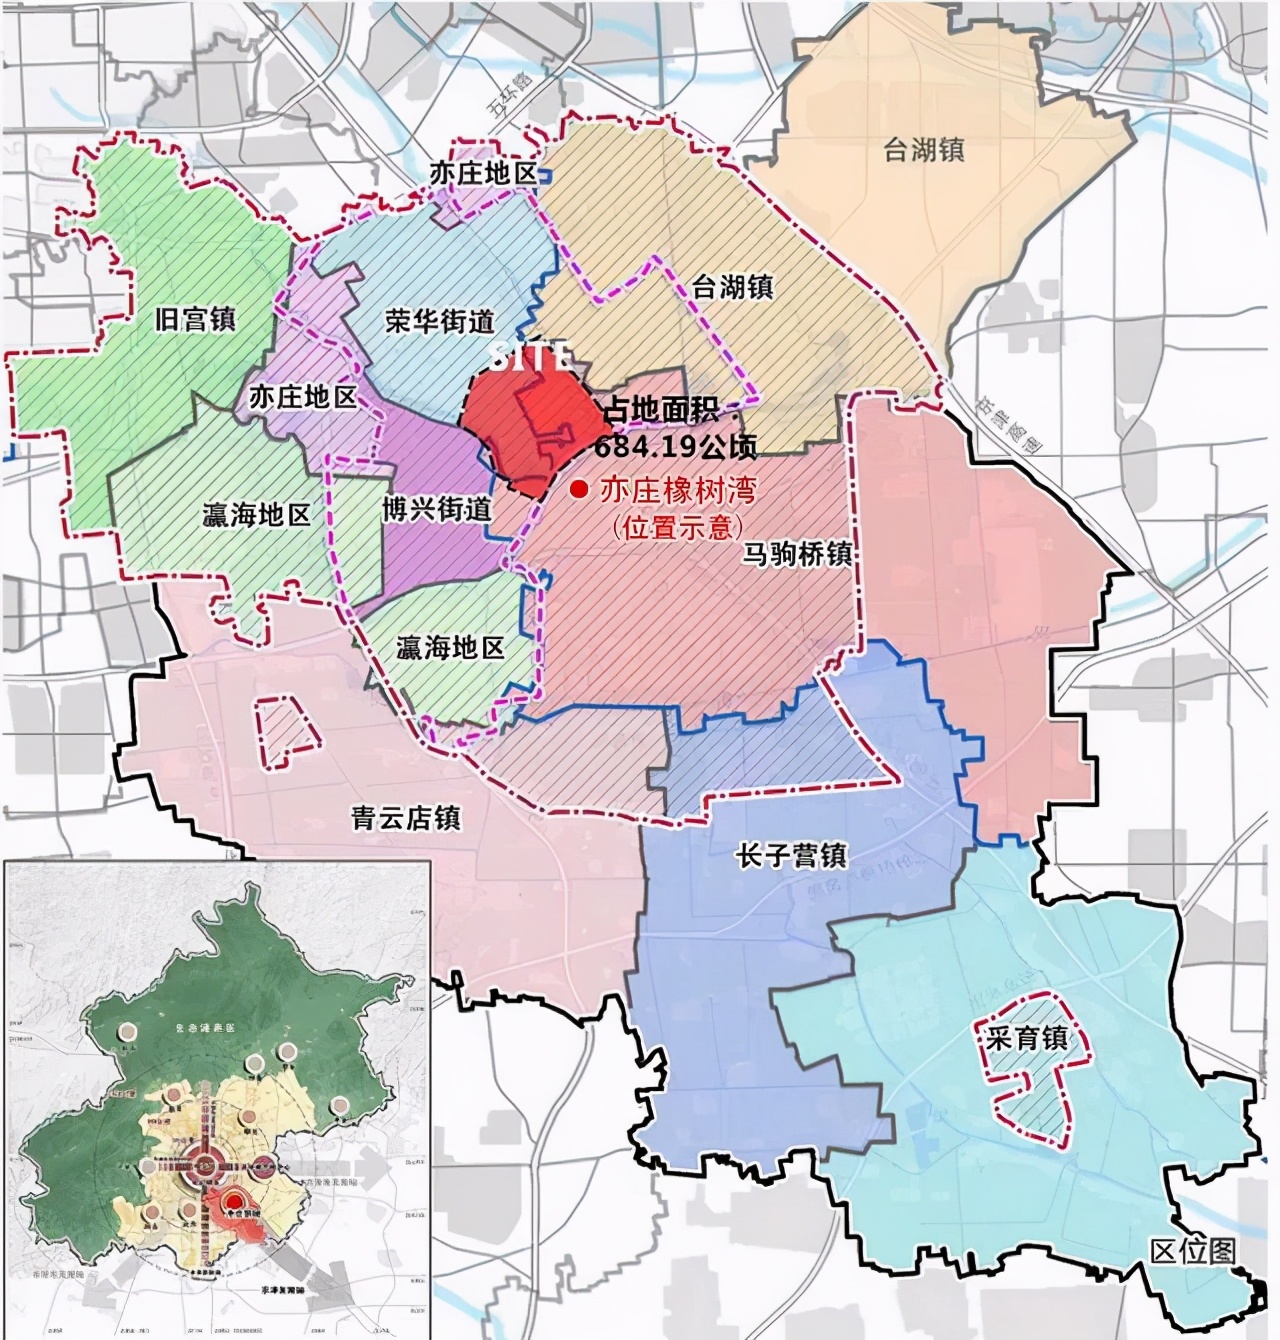 通州区详细地图图片